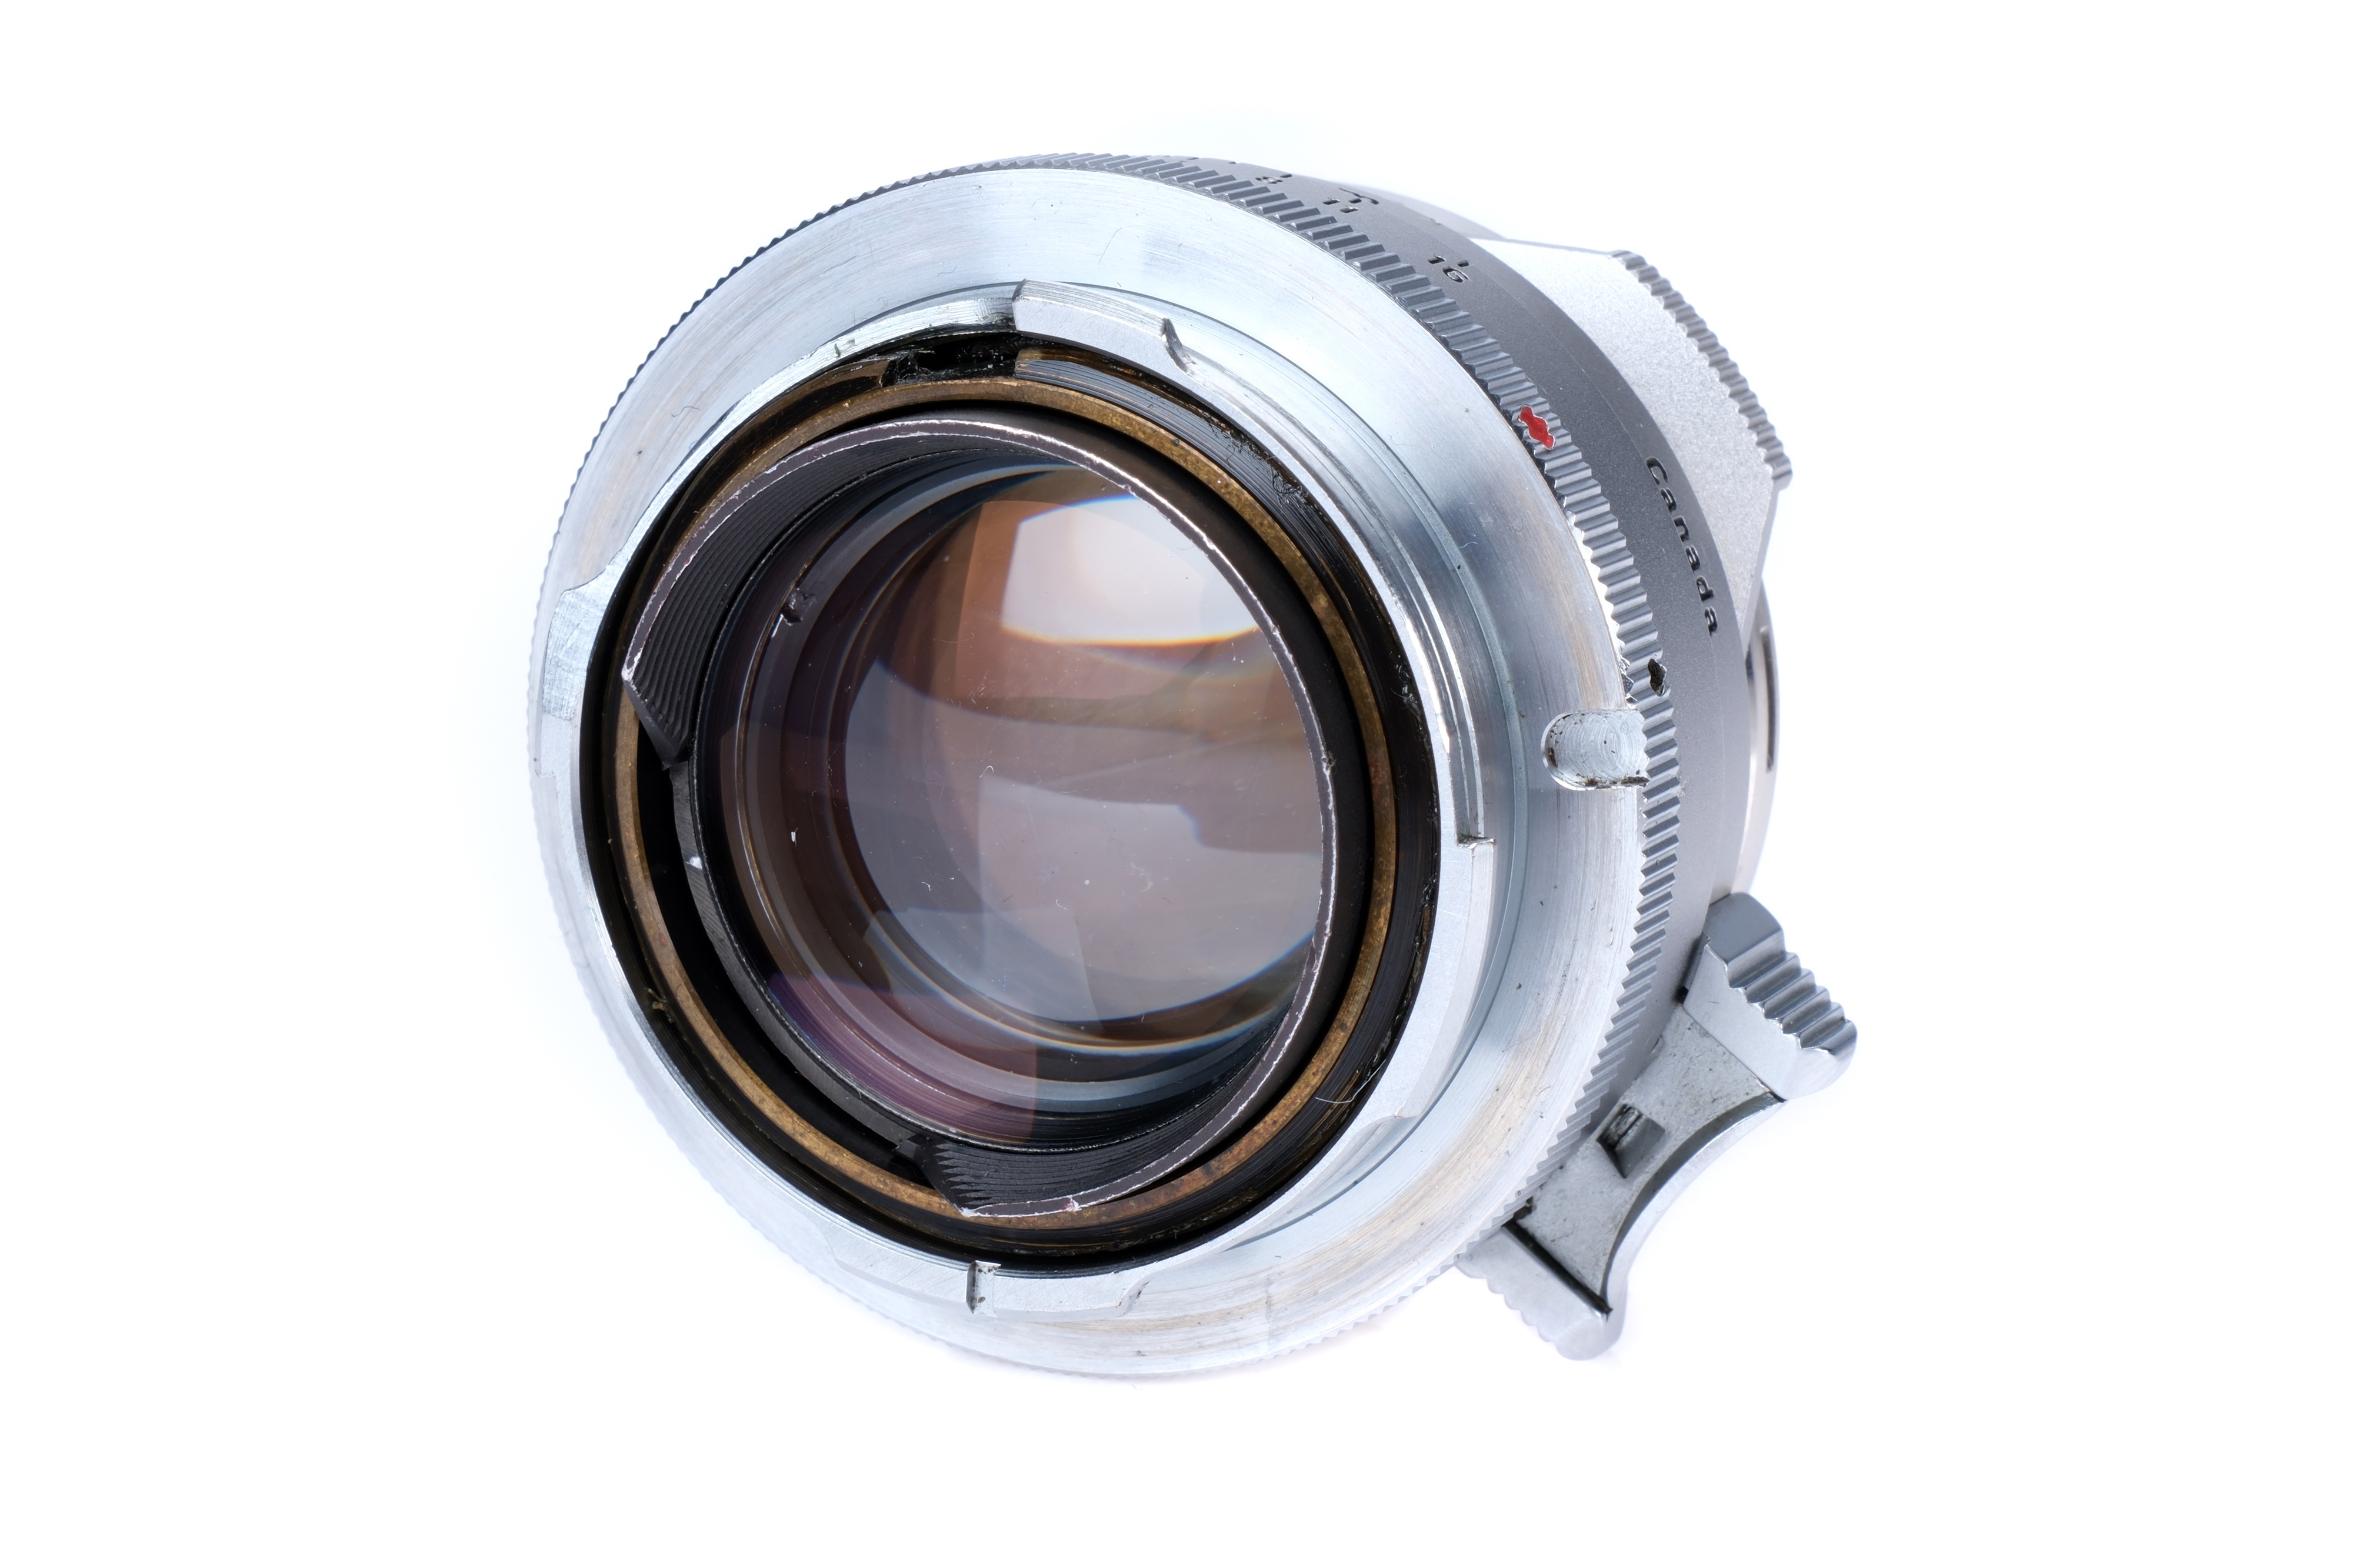 A Leitz Summilux 'Steel Rim' f/1.4 35mm Lens, - Image 4 of 6